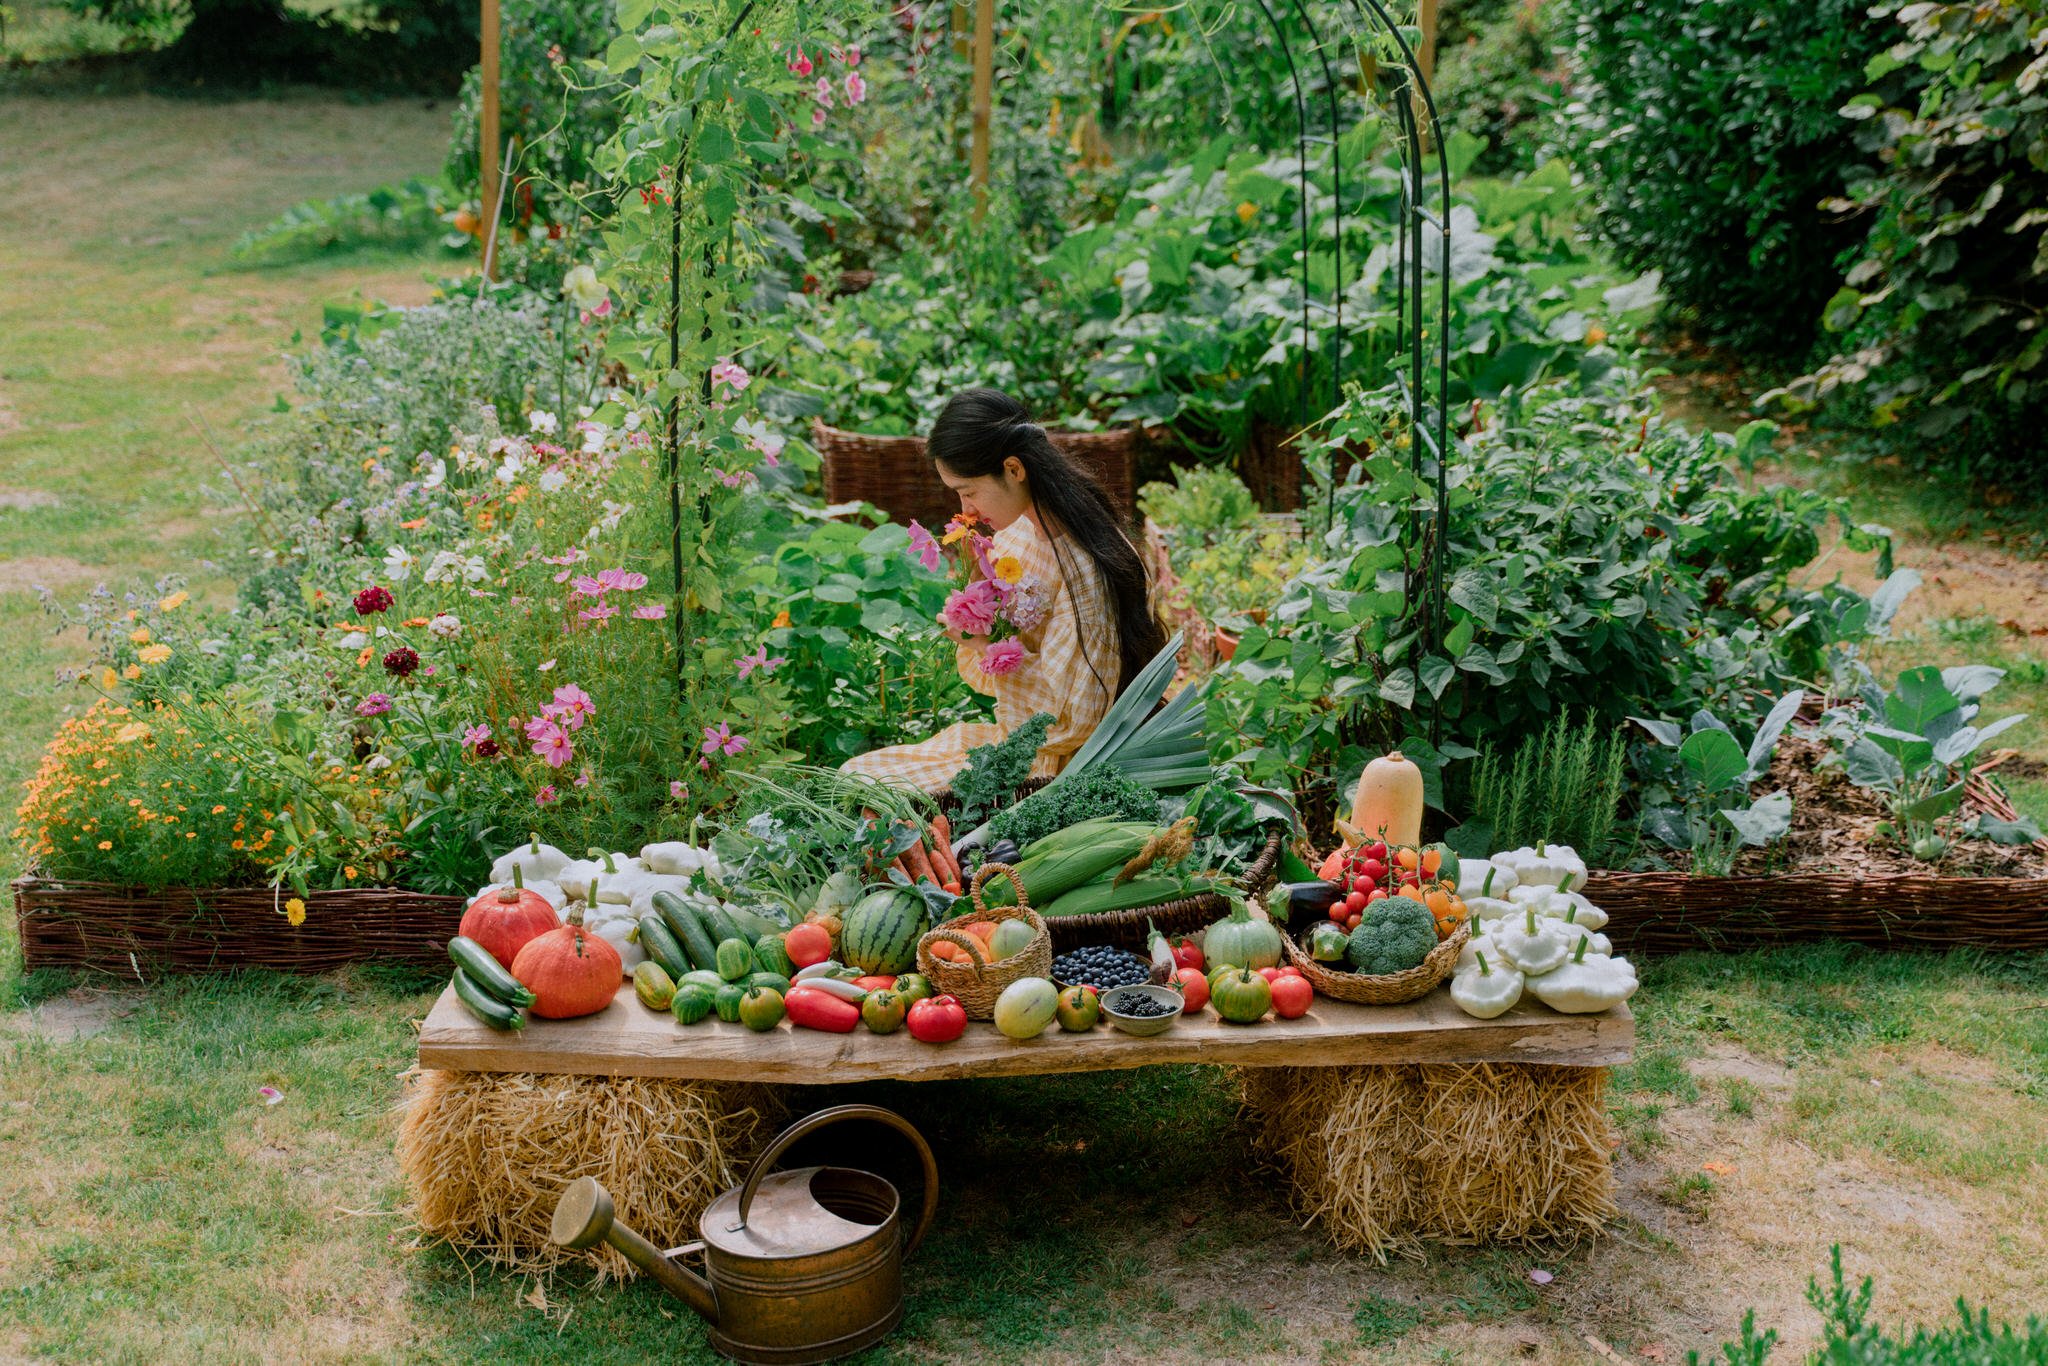 Vegetable Garden 2022 - Her86m2 - 474.jpg